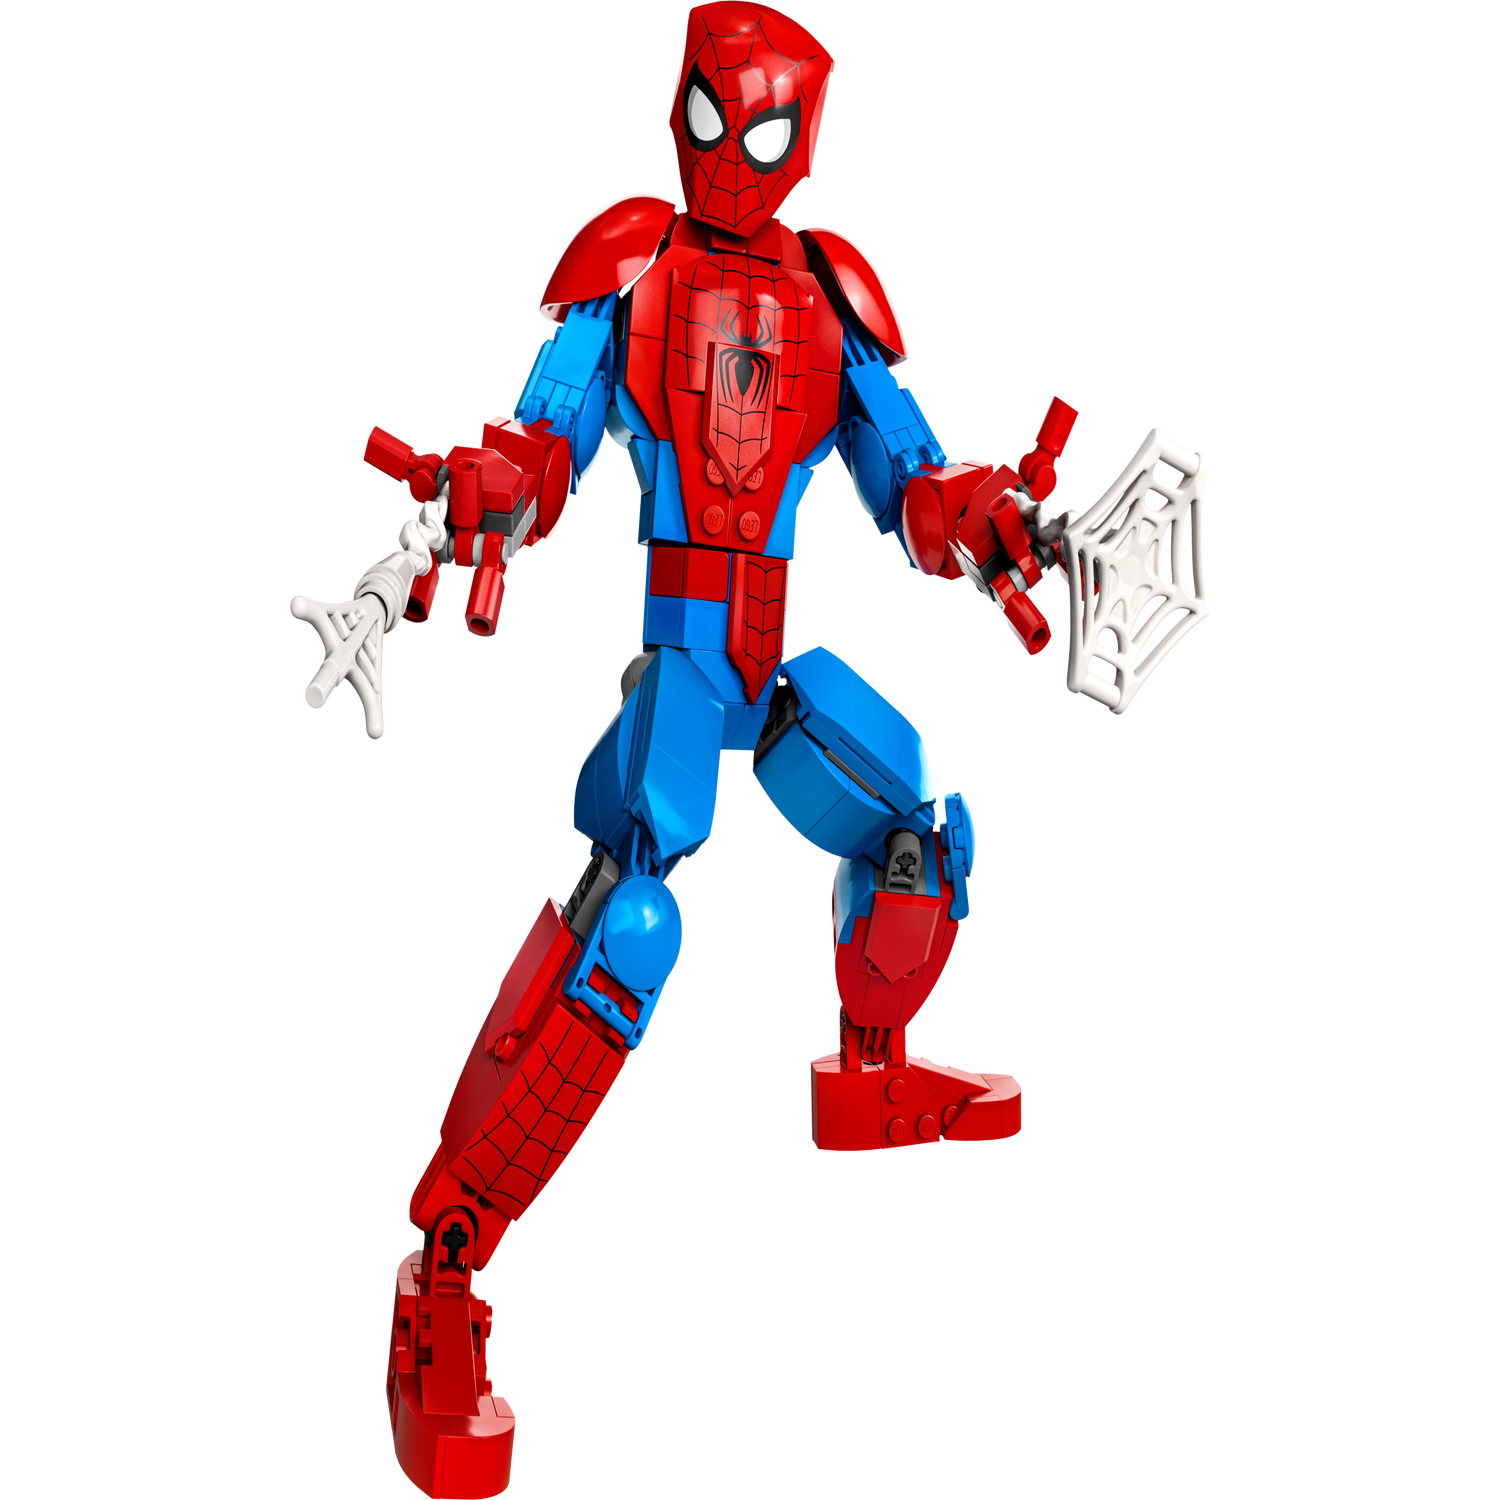 Jouet Spiderman Officiel: Achetez En ligne en Promo